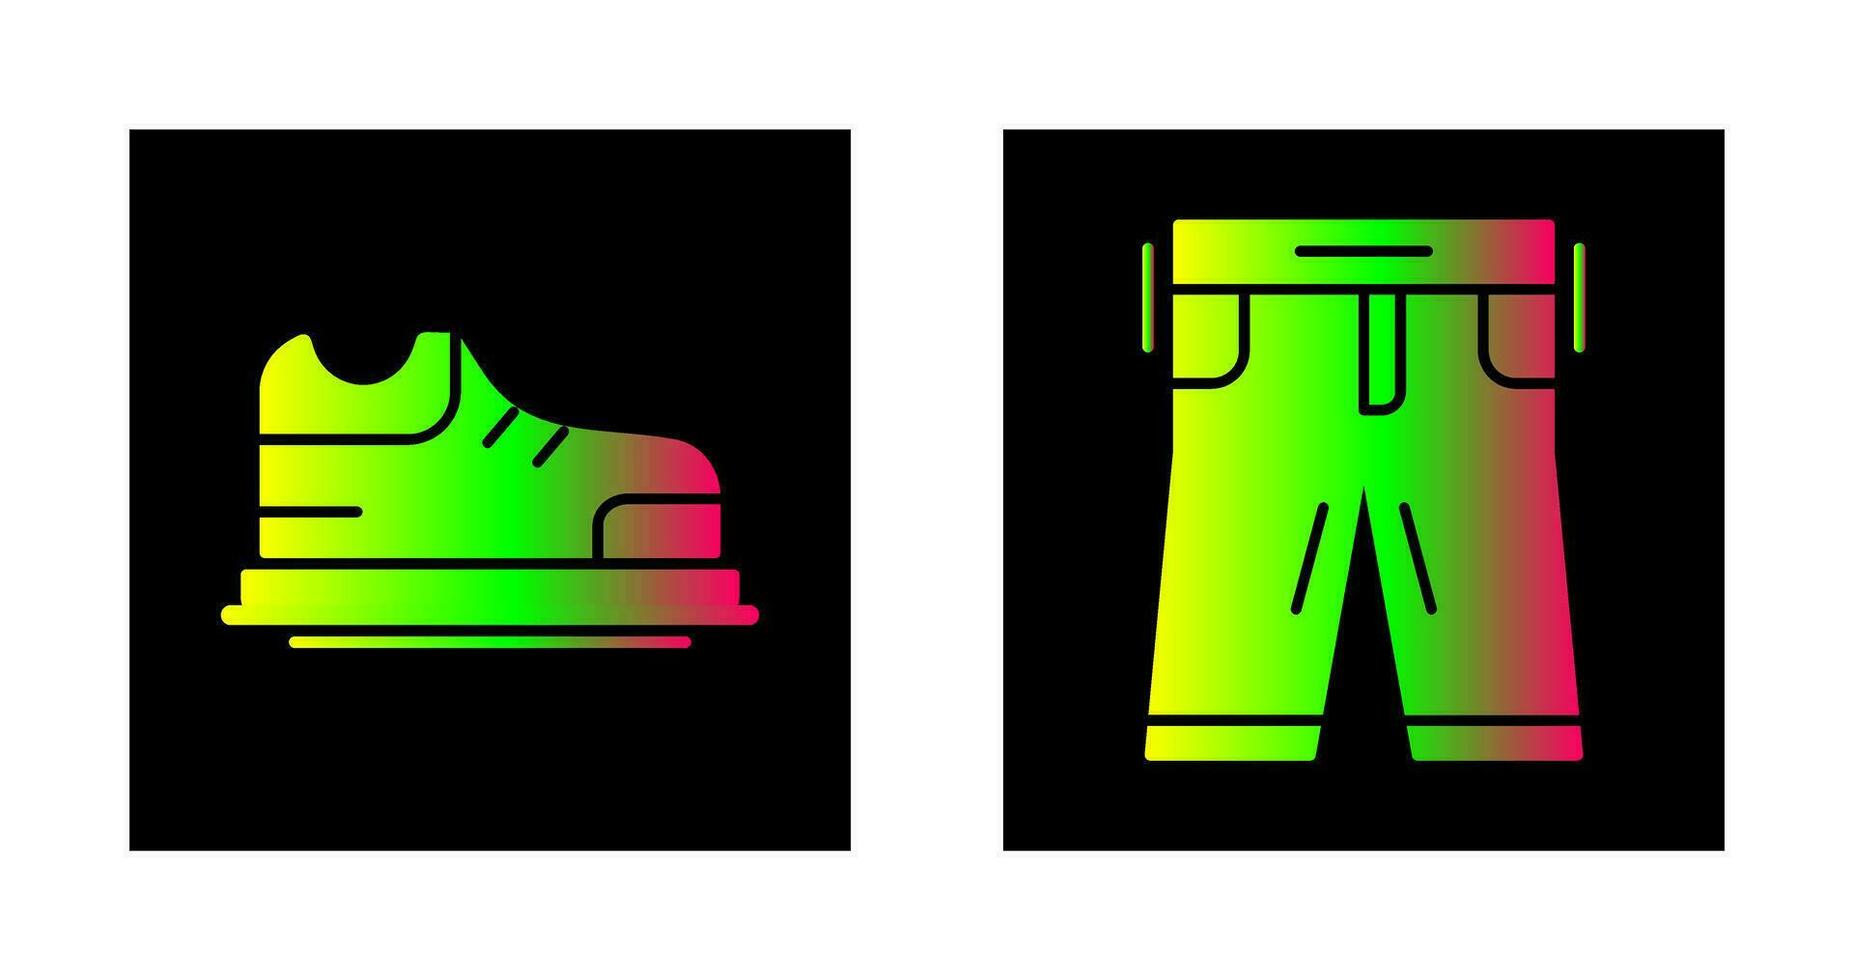 schoenen en broek icoon vector